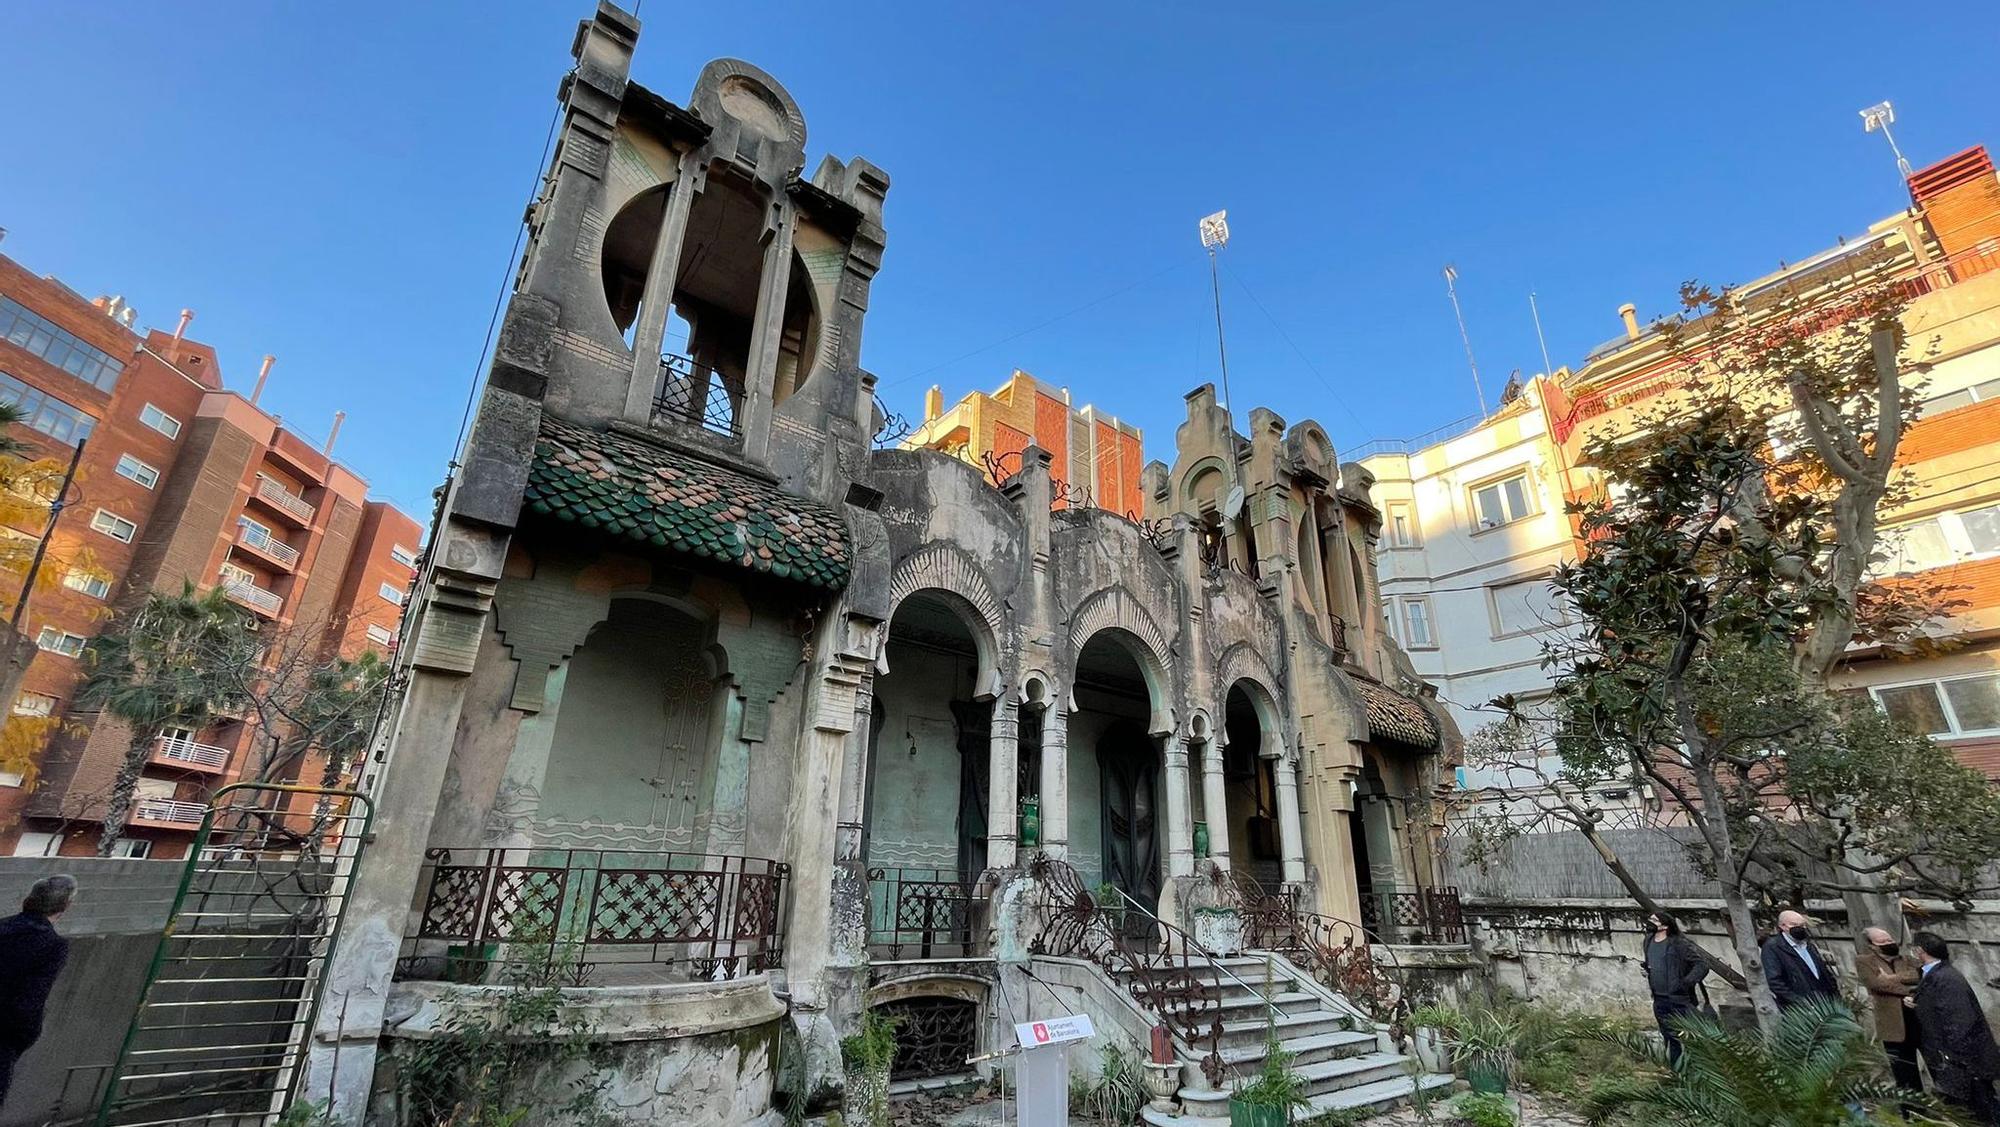 La Casa Tosquella se la encargó en 1889 el comerciante Antoni Tosquella al maestro de obras Juan Caballé como casa de verano.